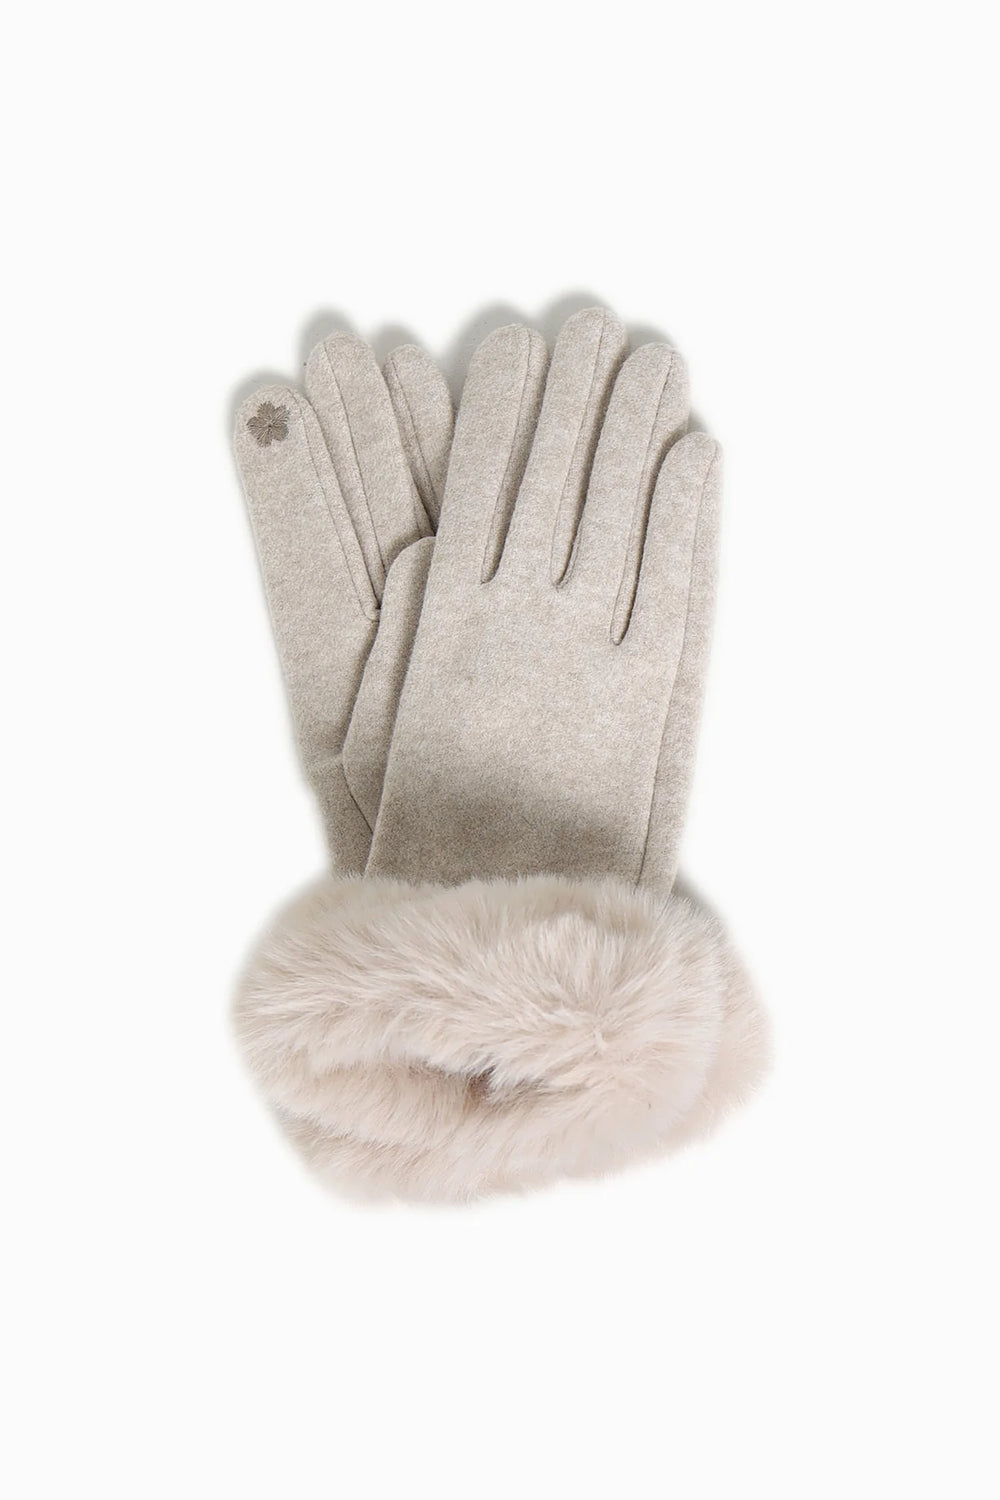 Lori Faux Fur Cuff Gloves in Tan - Madison&